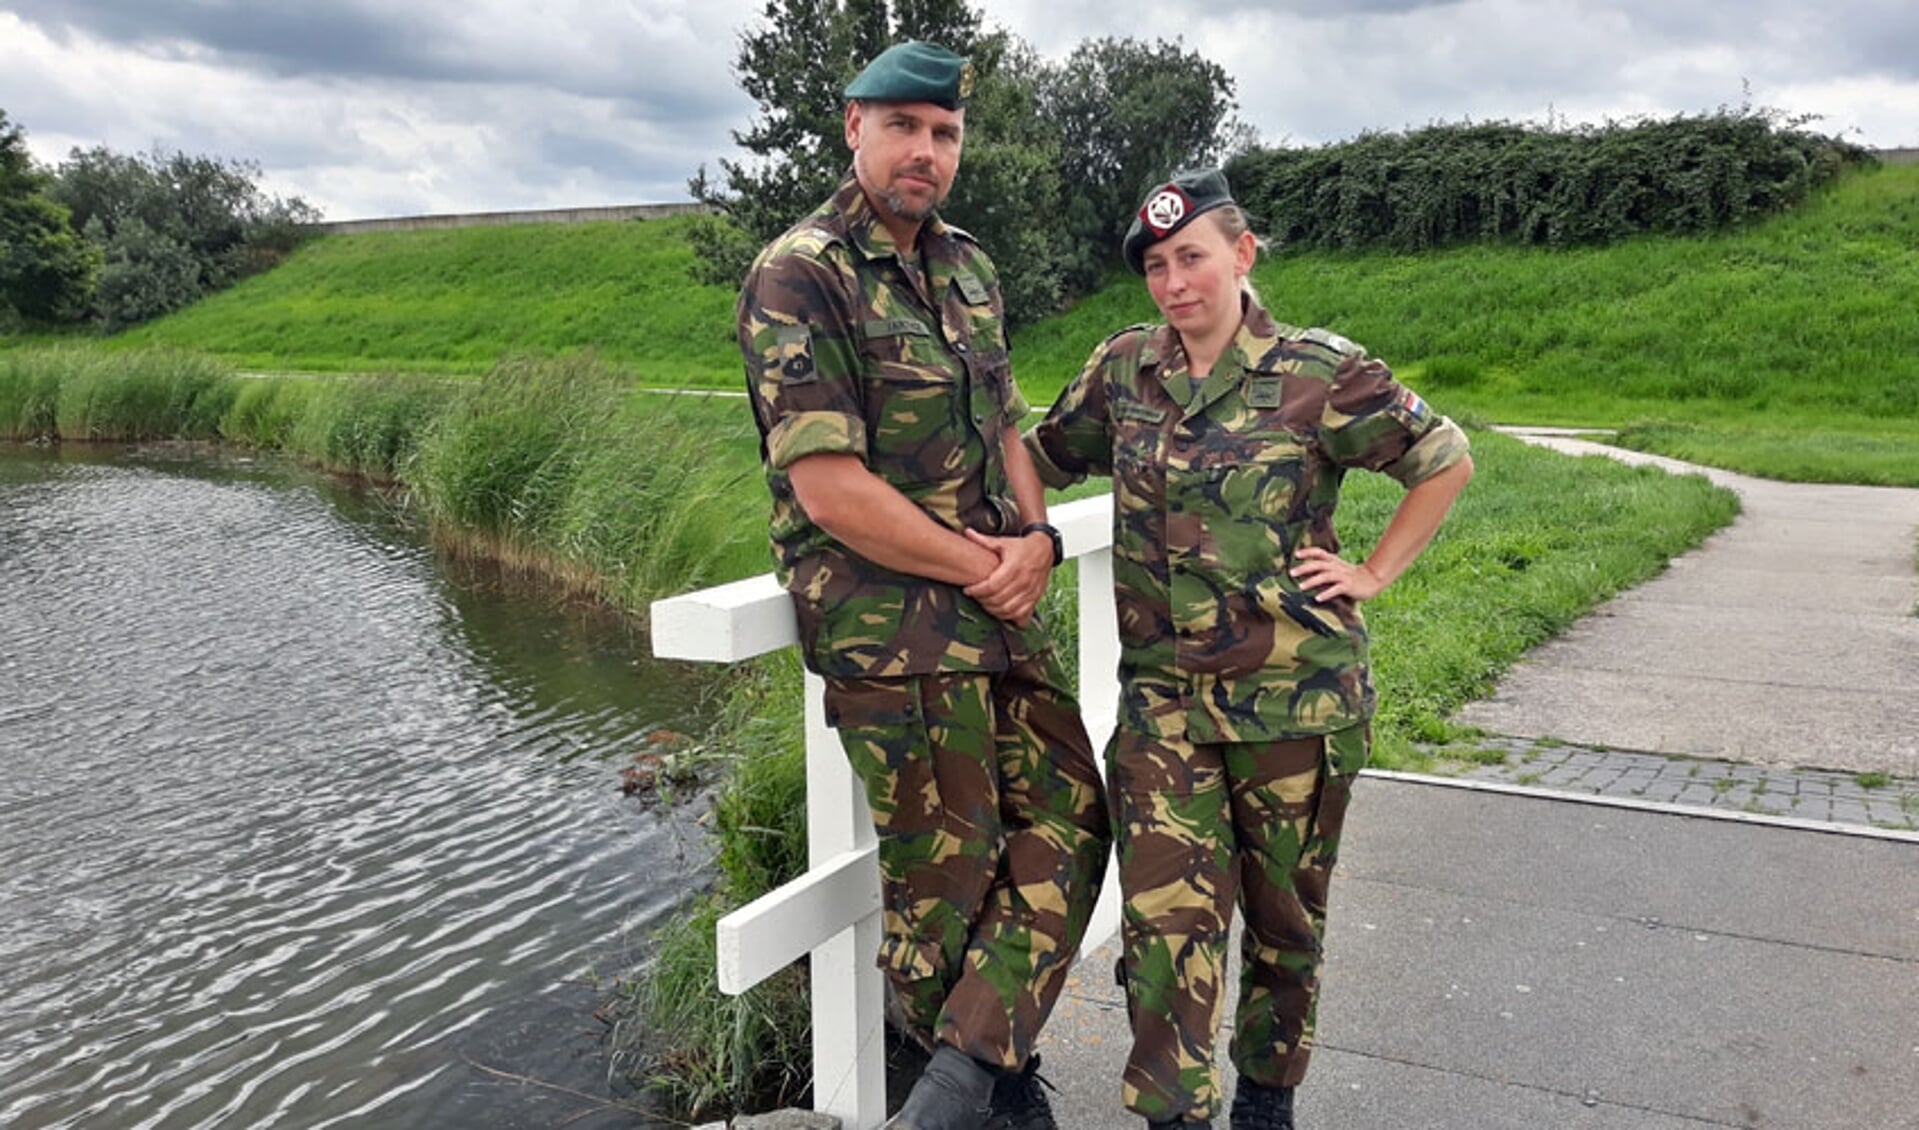 Lees in De Brug van volgende week een interview met dit veteranenechtpaar uit Kampen